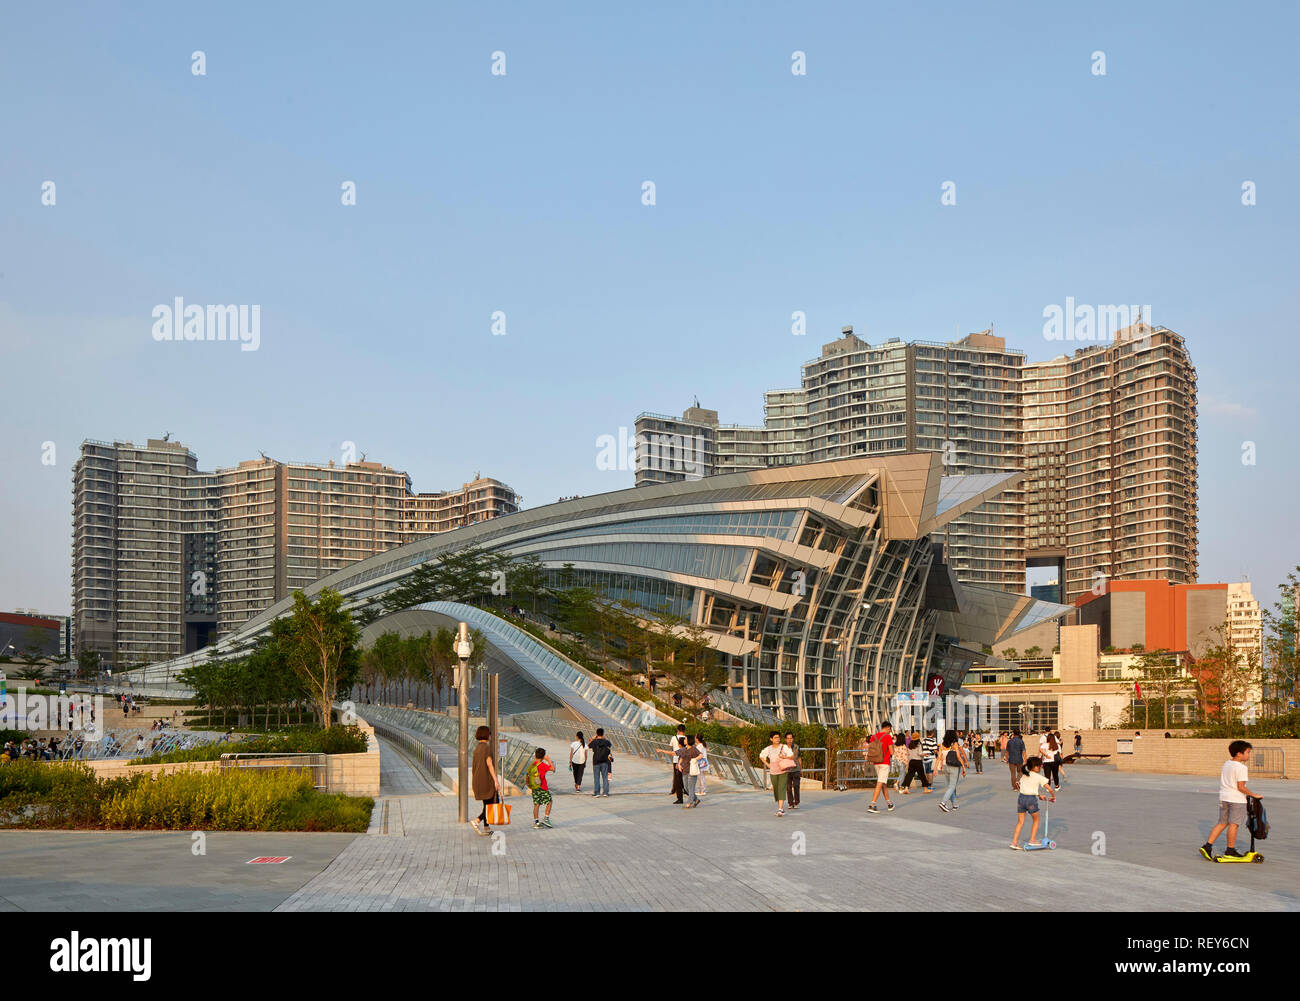 Insgesamt Seitenansicht am späten Nachmittag. West Bahnhof Kowloon, Hong Kong, China. Architekt: Andrew Bromberg Aedas, 2018. Stockfoto